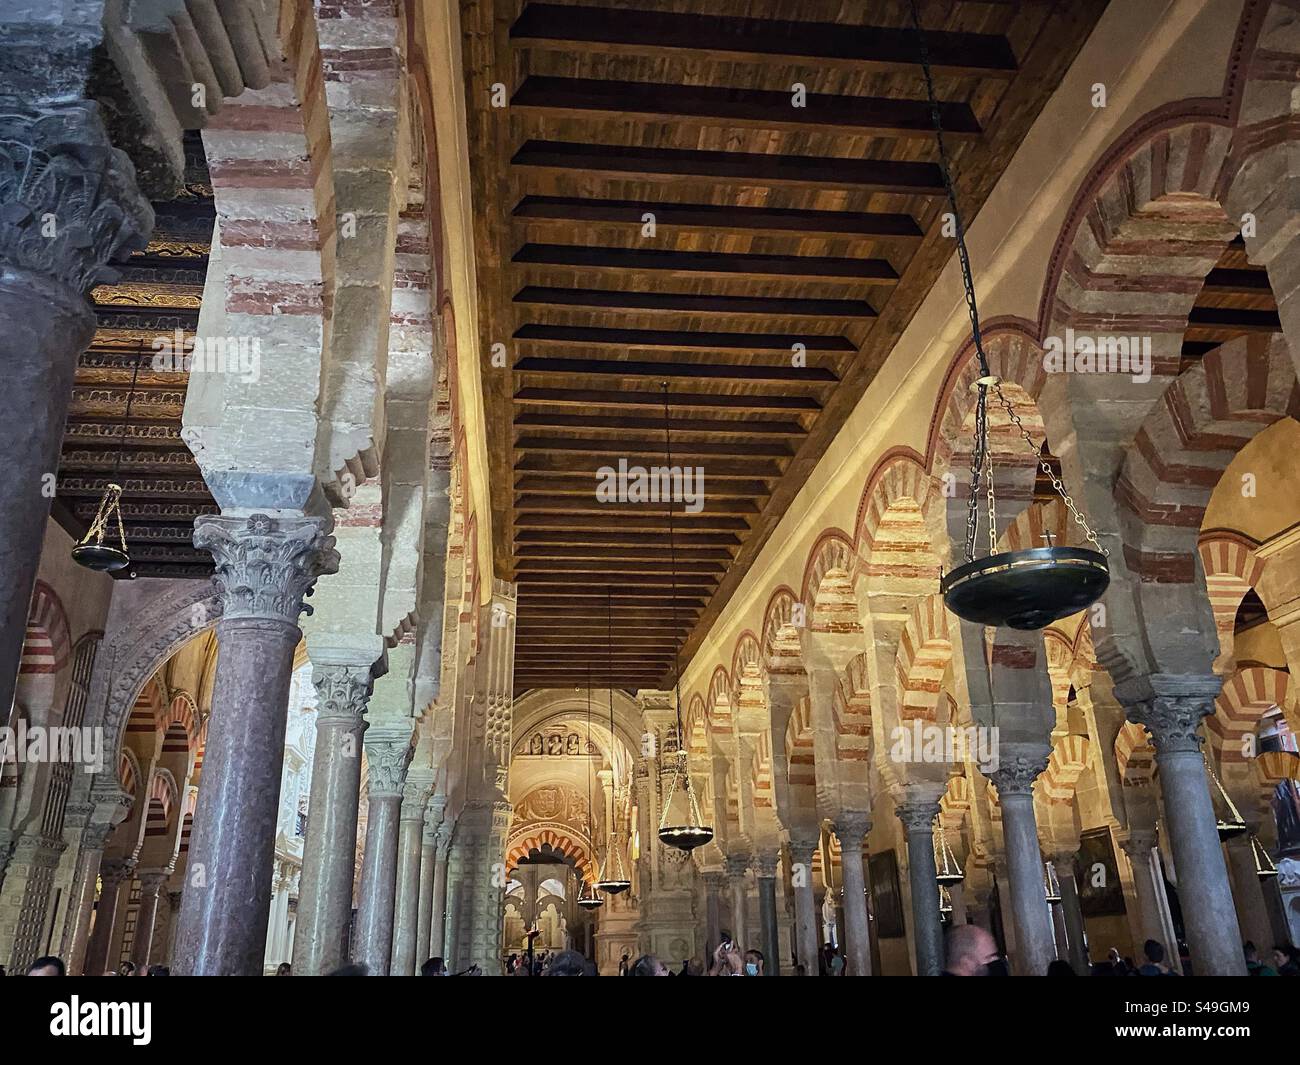 Die von Bögen und Säulen eingerahmte Decke in der Moschee-Kathedrale in Córdoba, Spanien. Stockfoto